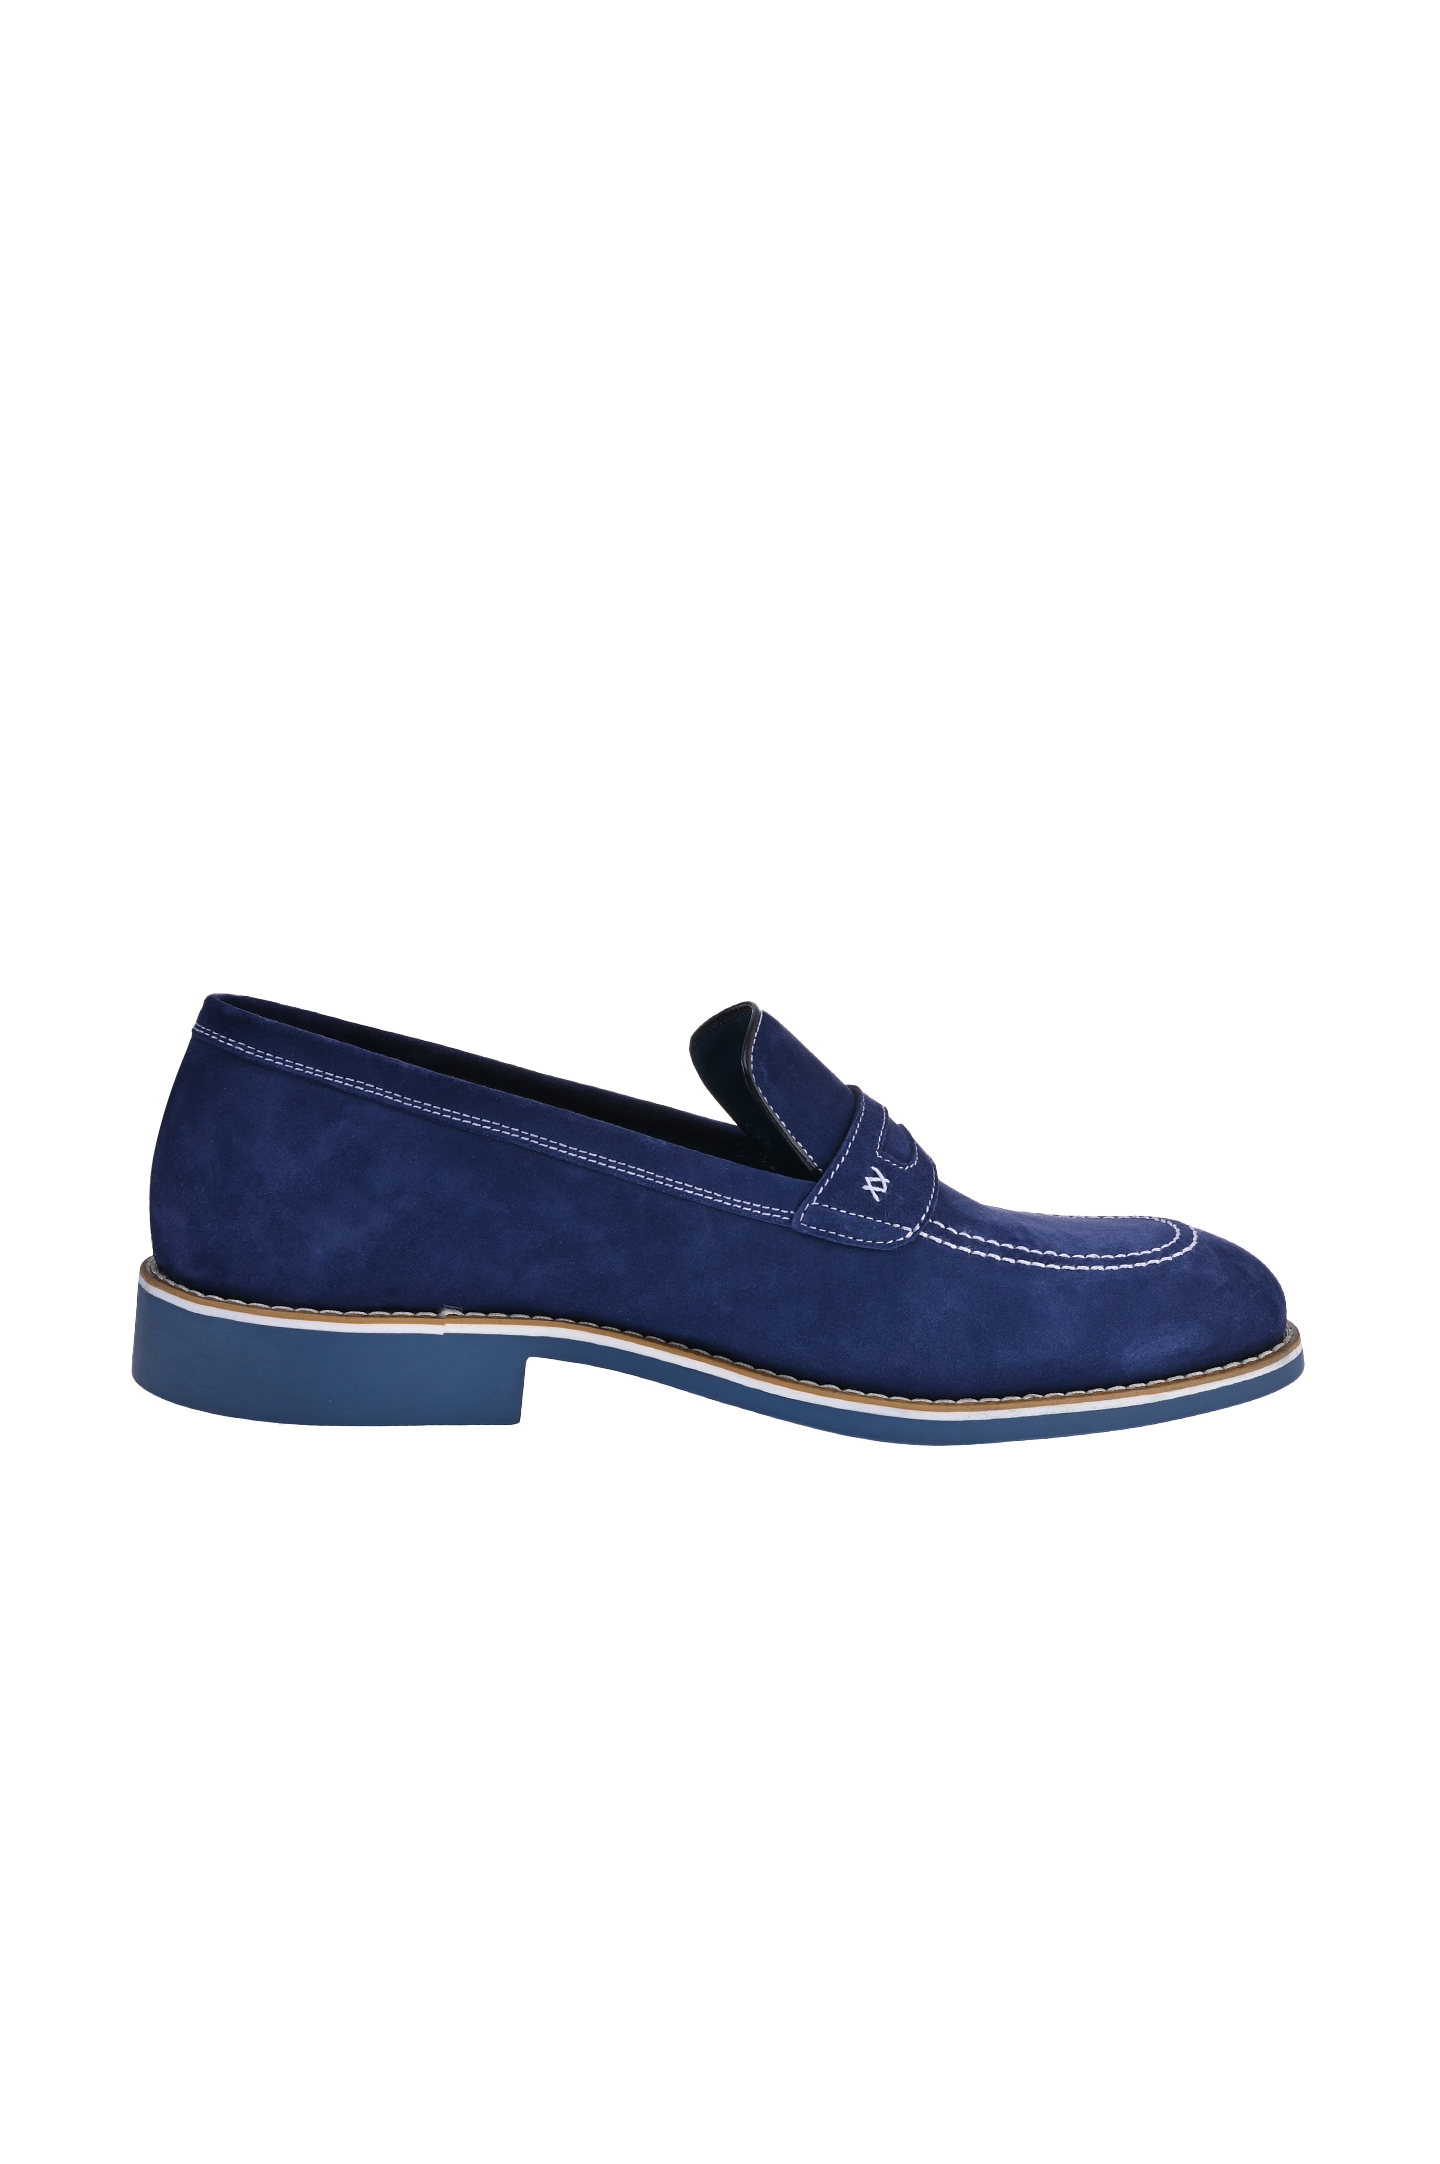 Туфли ARTIOLI 0R308, цвет: Синий, Мужской